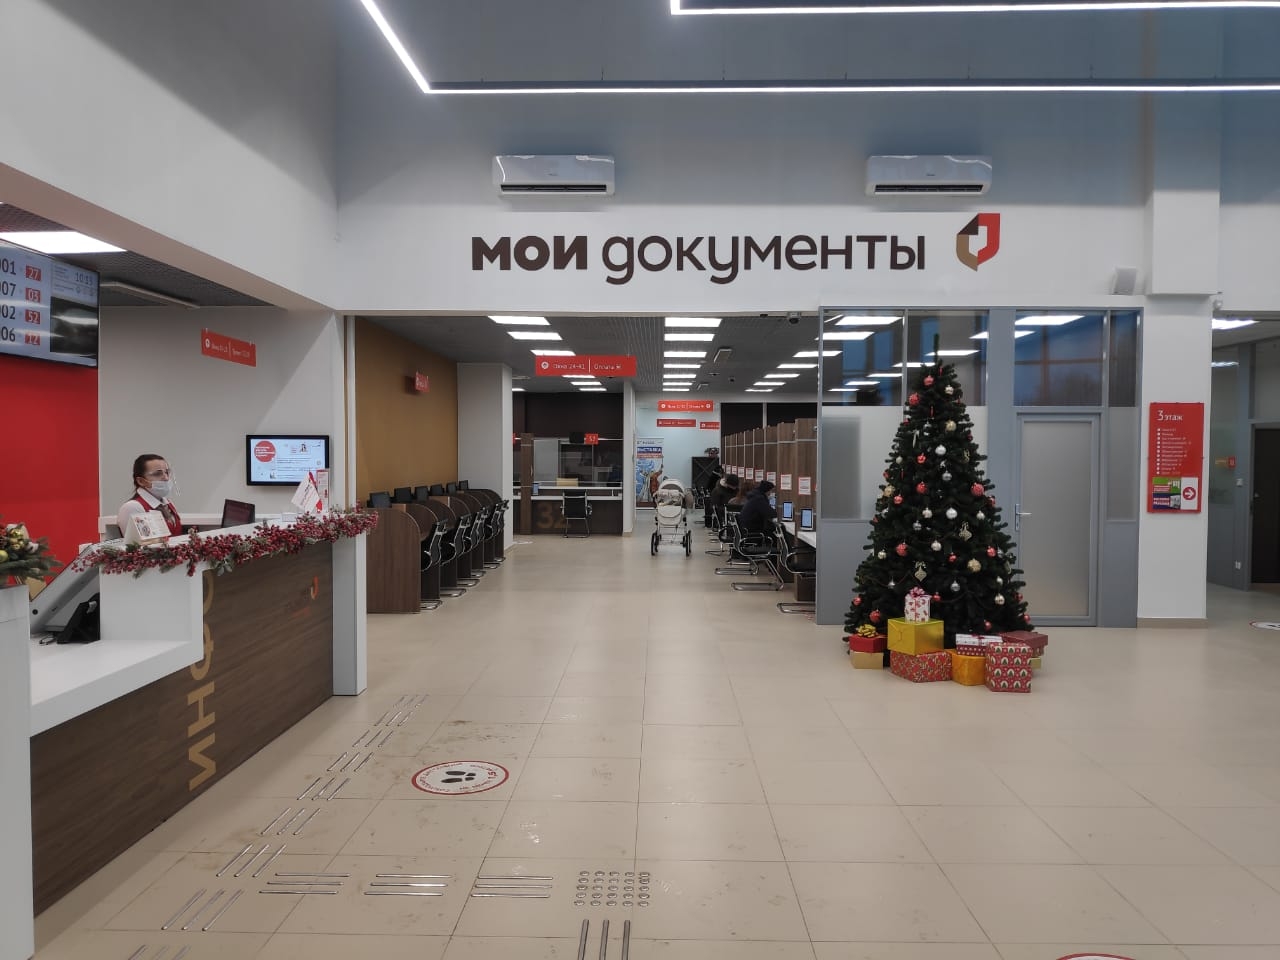 Центр государственных услуг открыли в Щербинке. Фото предоставили сотрудники администрации.